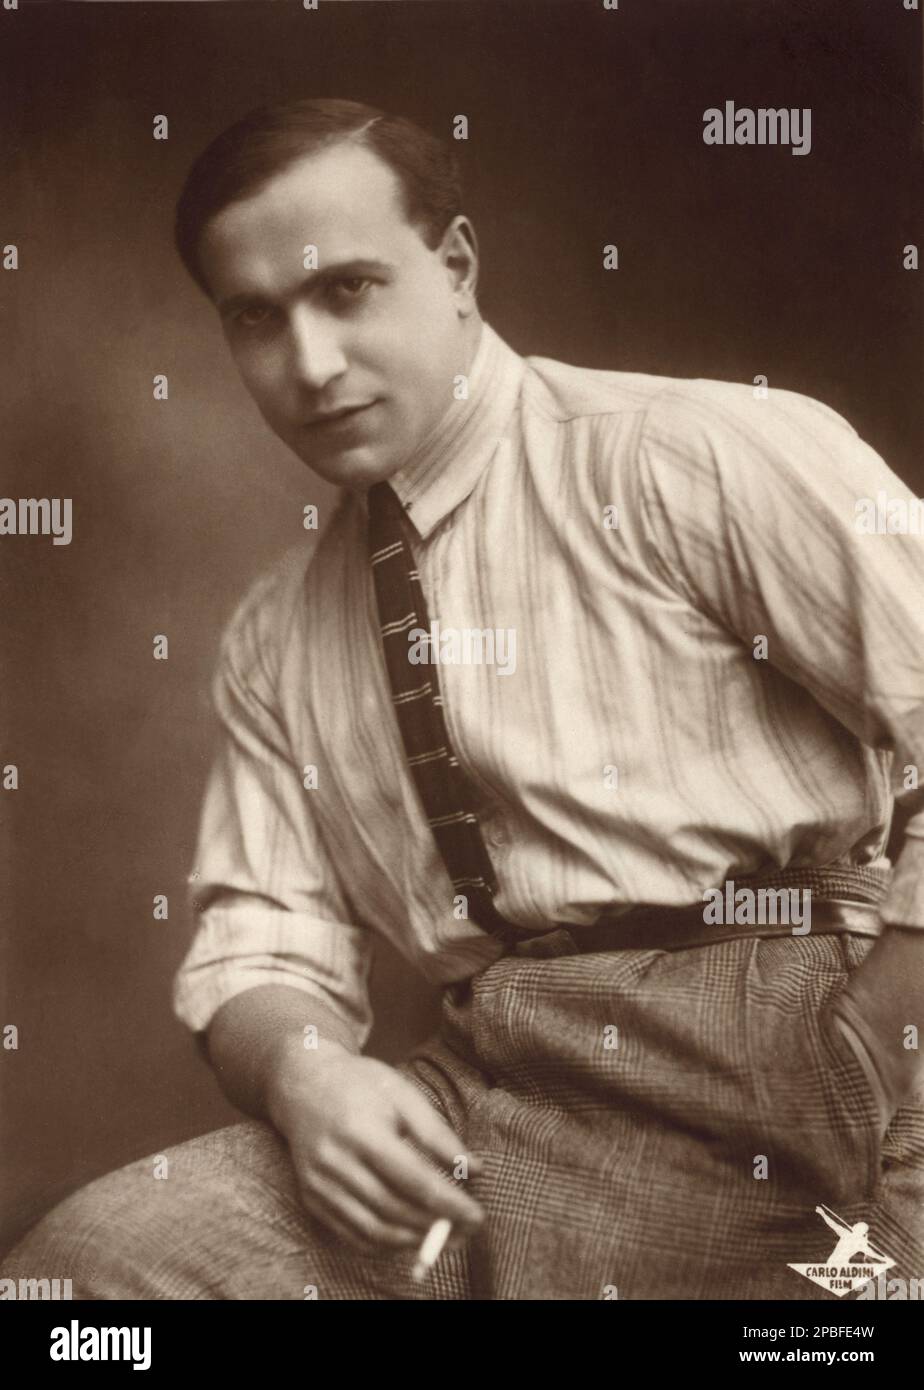 1925 c, ALLEMAGNE : l'acteur italien de cinéma sur écran silencieux, producteur et réalisateur CARLO ALDINI ( 1894 - 1961 ). Photo de Rembrandt , Berlin . Dans sa jeunesse, il a été maître de la classe régionale de poids des ressources en lutte et en boxe. 1920 il a commencé comme acteur de cinéma et a été avec son premier film LA 63-71-57, une aventure d'action avec des voitures, même à l'étranger. À partir de 1923 dans le succès du film allemand. Son dernier film a été Aldini 1934. - CINÉMA MUTO - attore - collier - colletto - cravatta - cravate - ritratto - portrait - uomo forzuto - sportman - sportivo - muscles - muscoli - muscoloso - fumo - fumée - sigar Banque D'Images